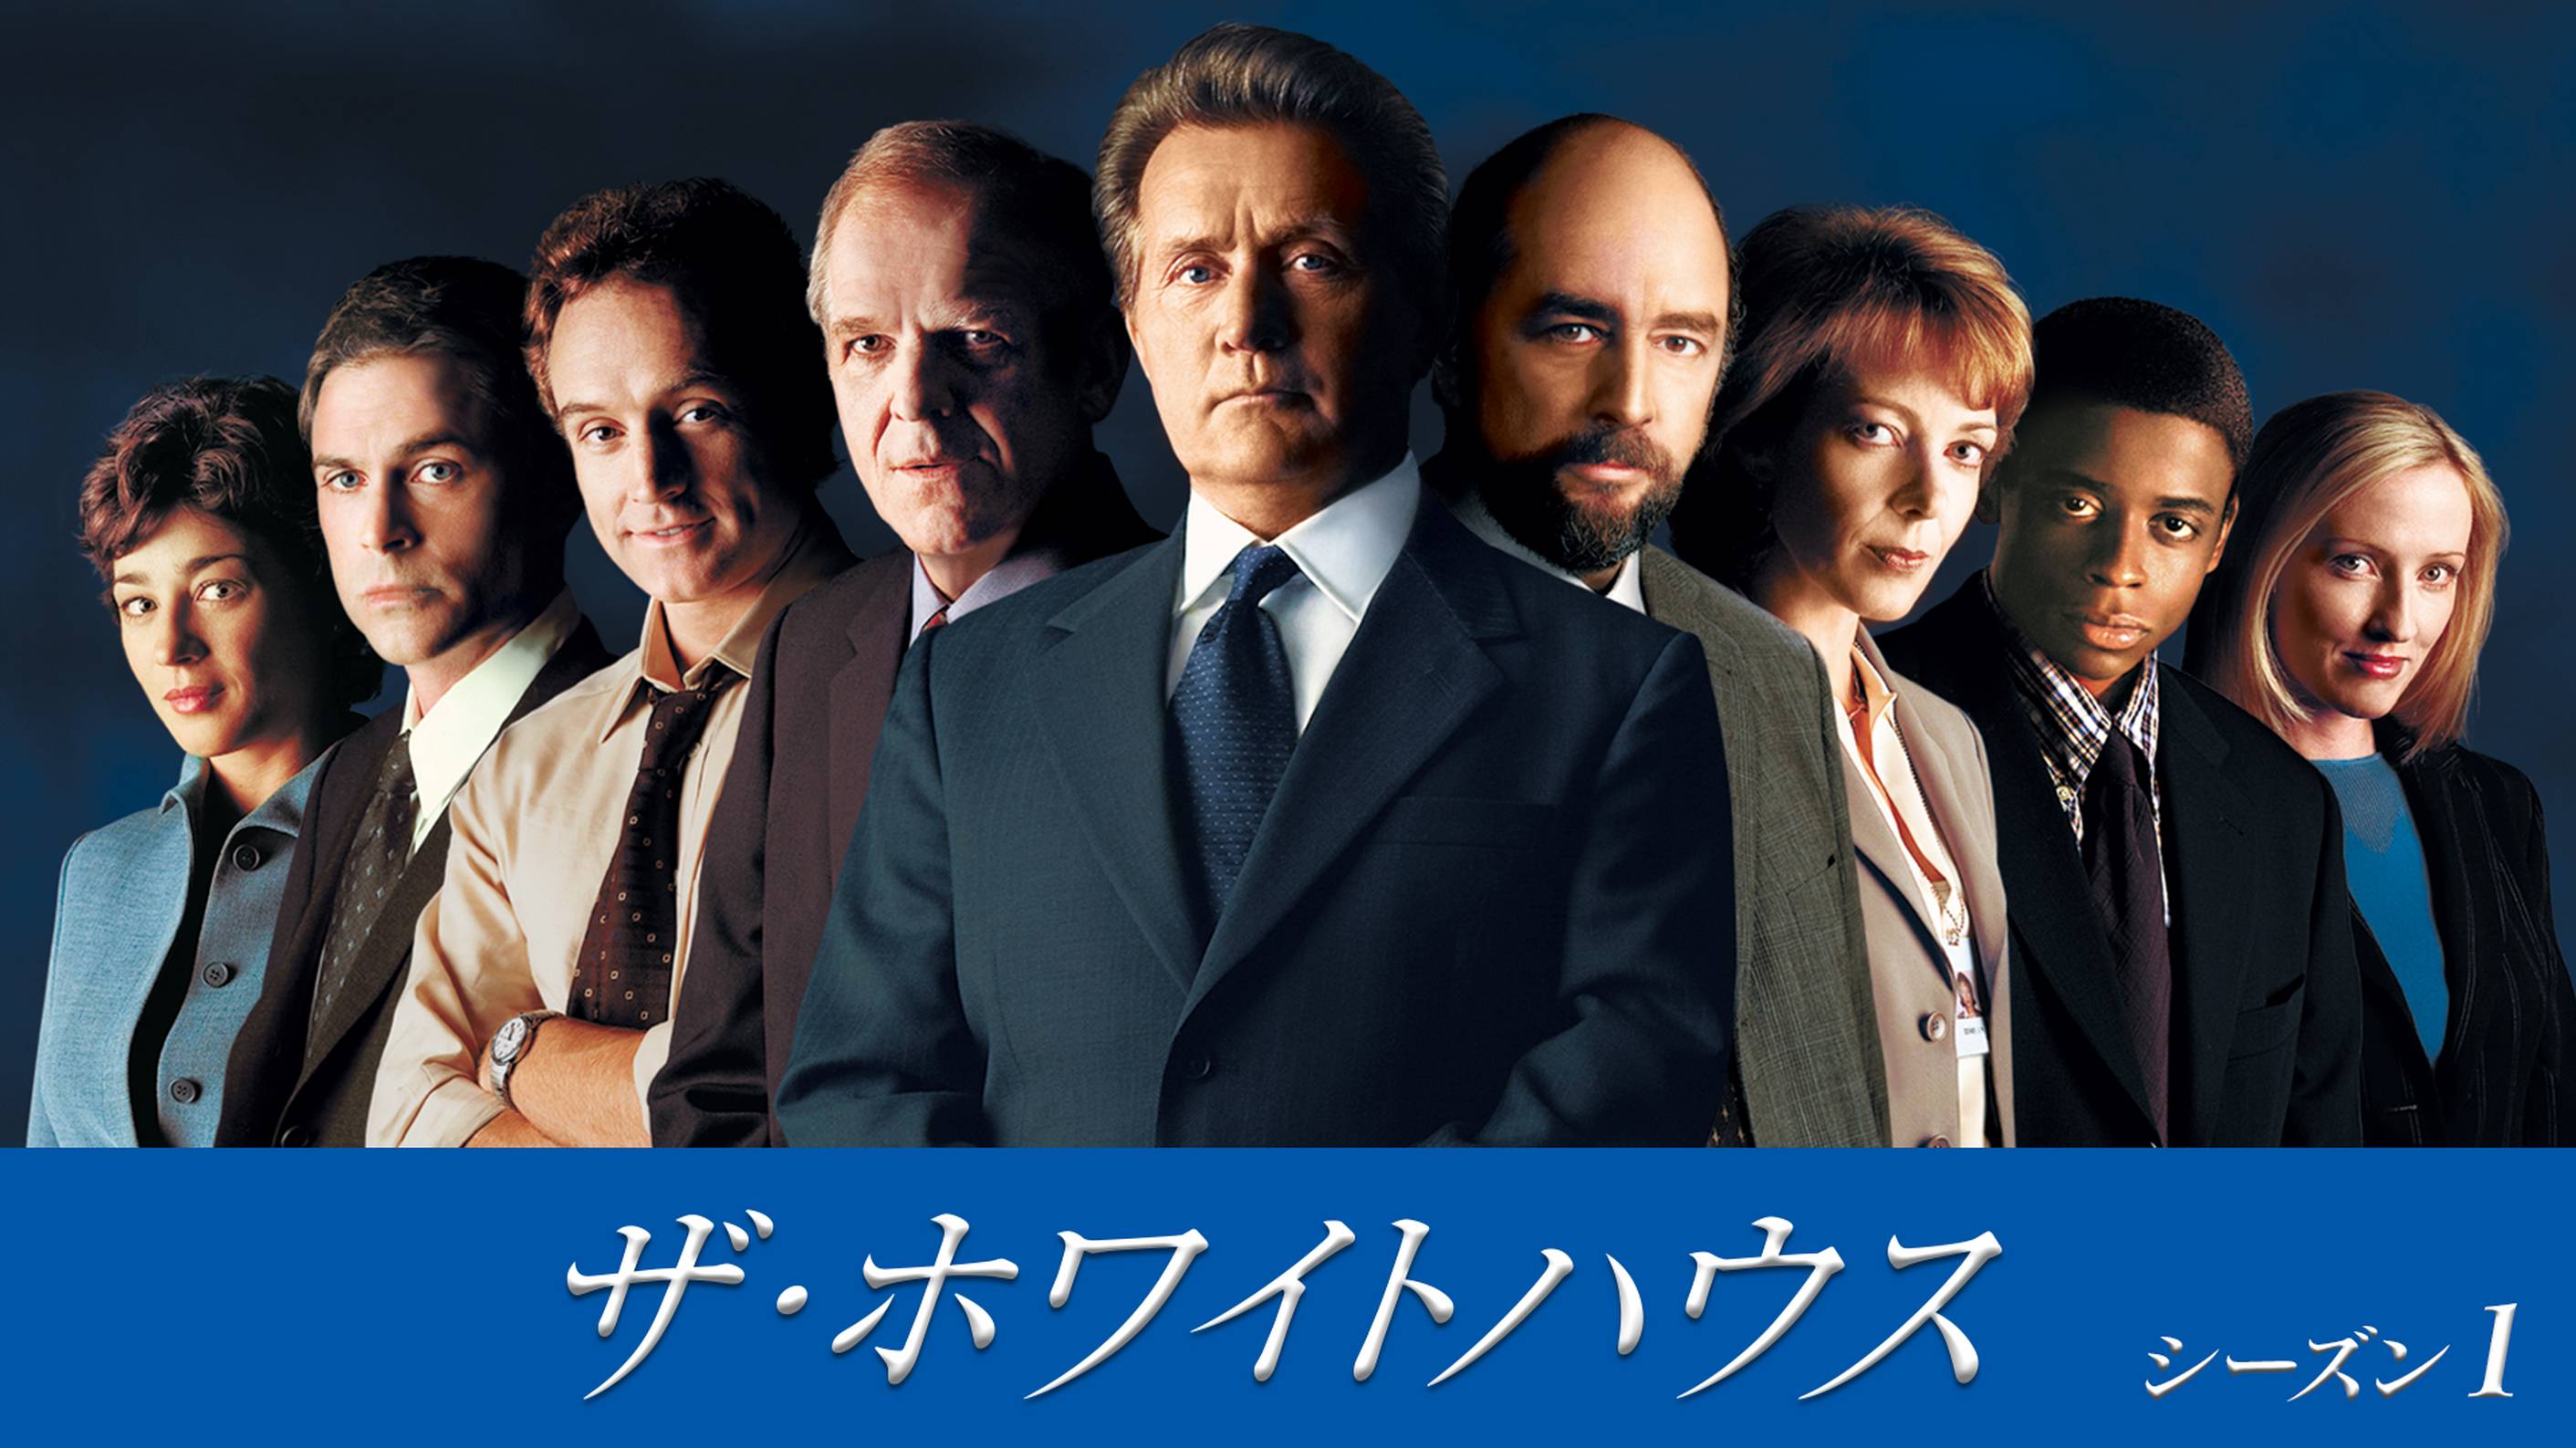 ザ・ホワイトハウス シーズン1(海外ドラマ / 1999) - 動画配信 | U 